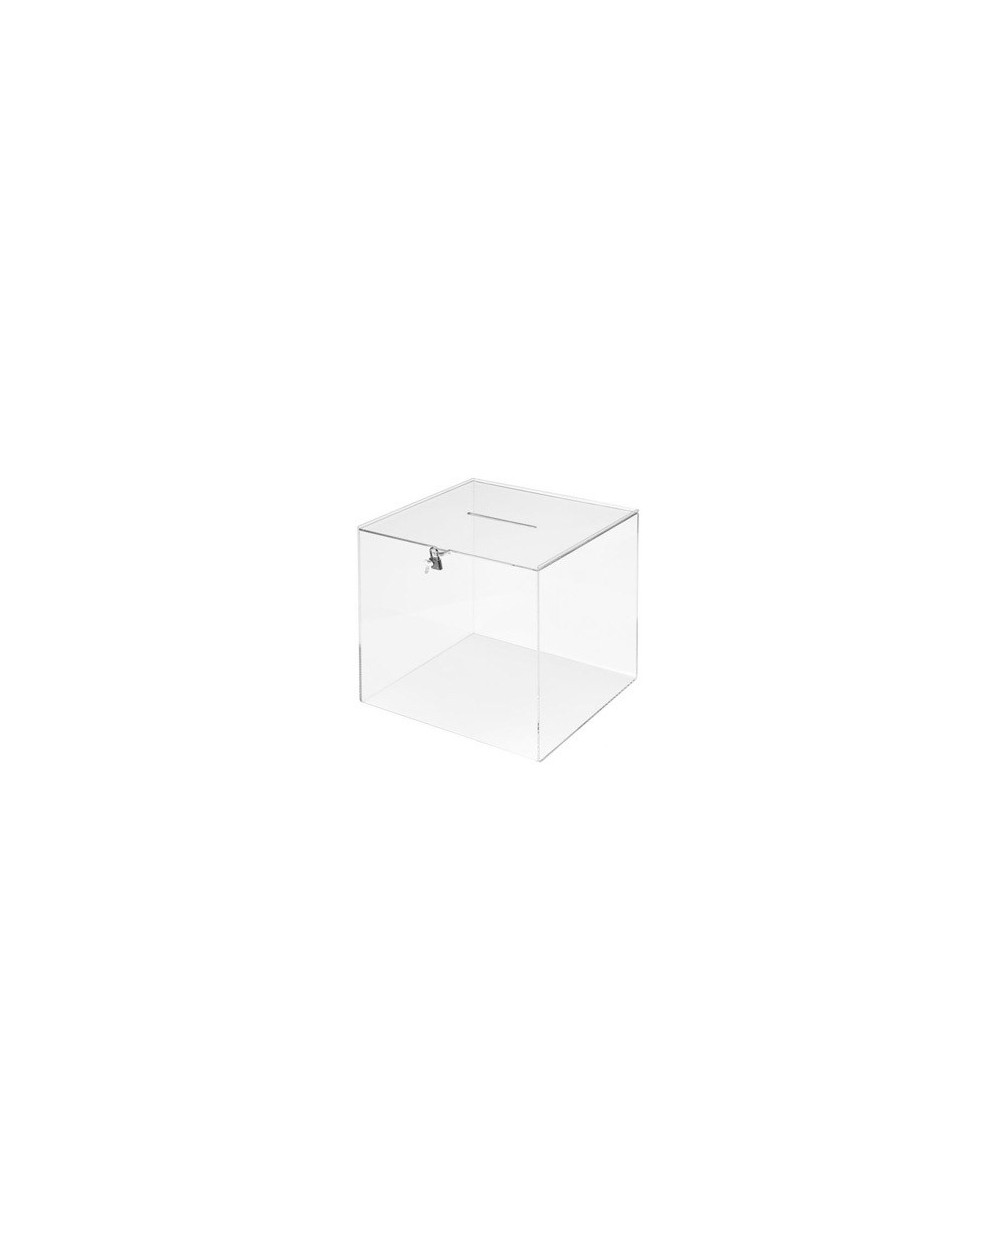 Urna electoral archivo 2000 cuadrada con llave metacrilato 3 mm 300x300x300 mm